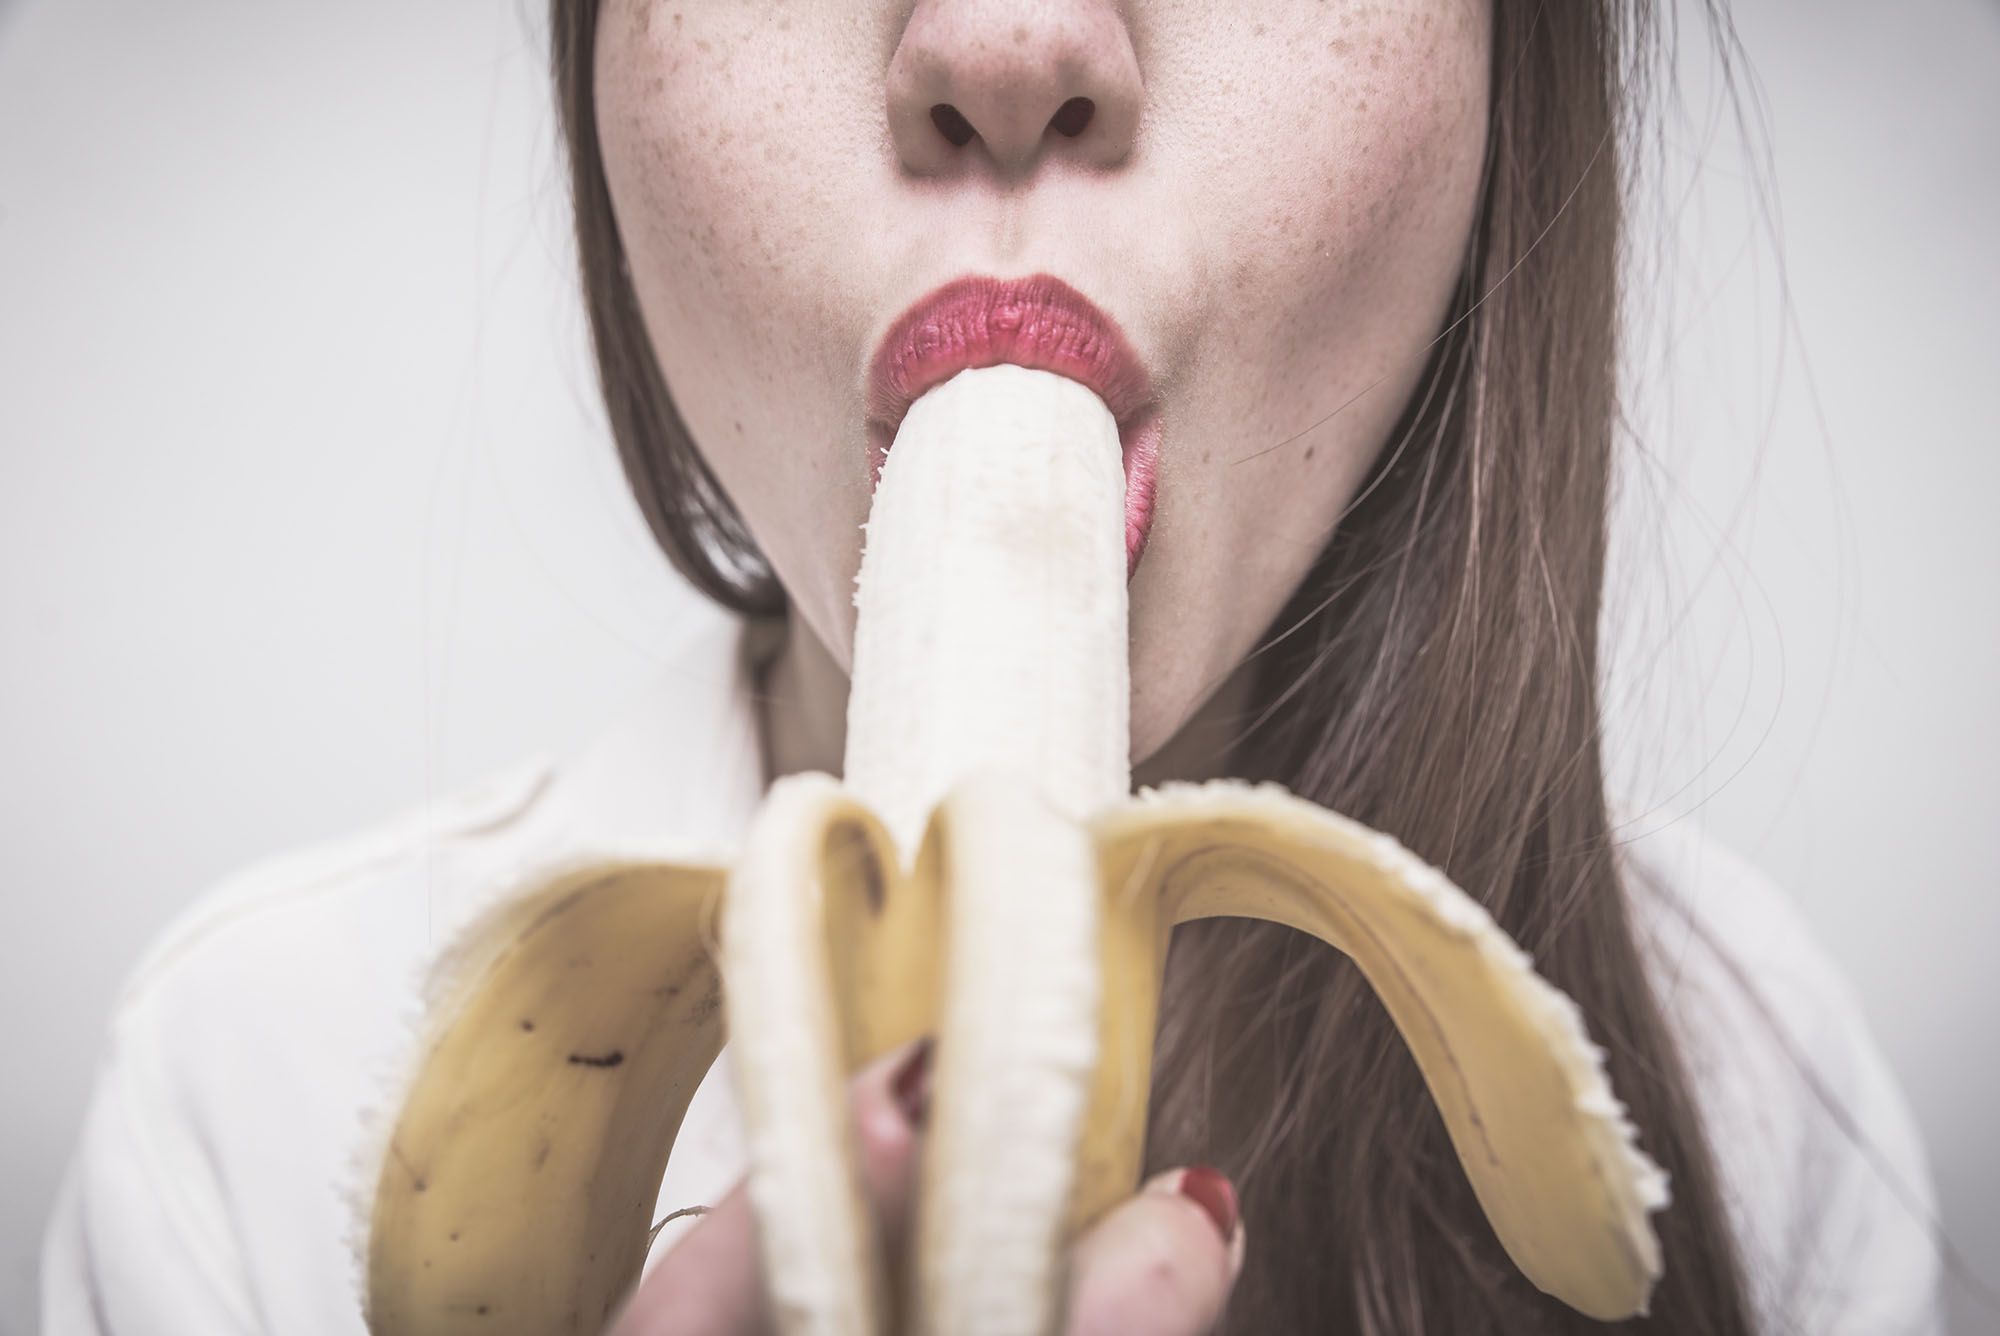 Deepthroat Anal - Abbildung einer Frau, die eine Banane isst.